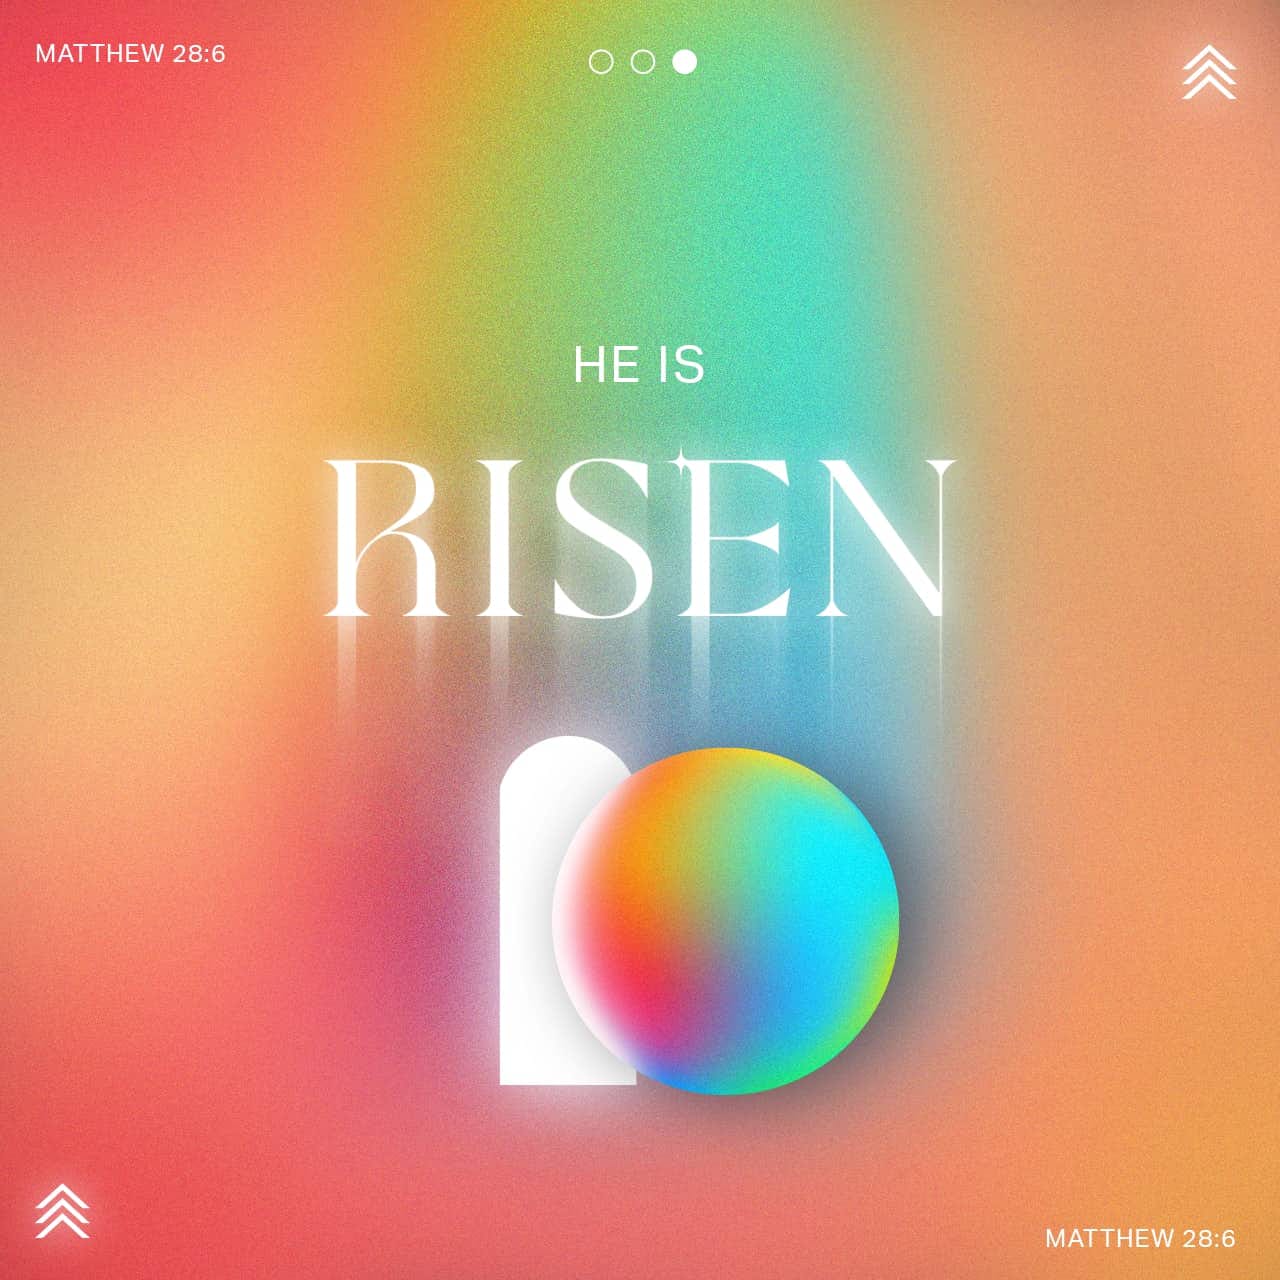 He is risen - Matthew 28:6 - Verse Image